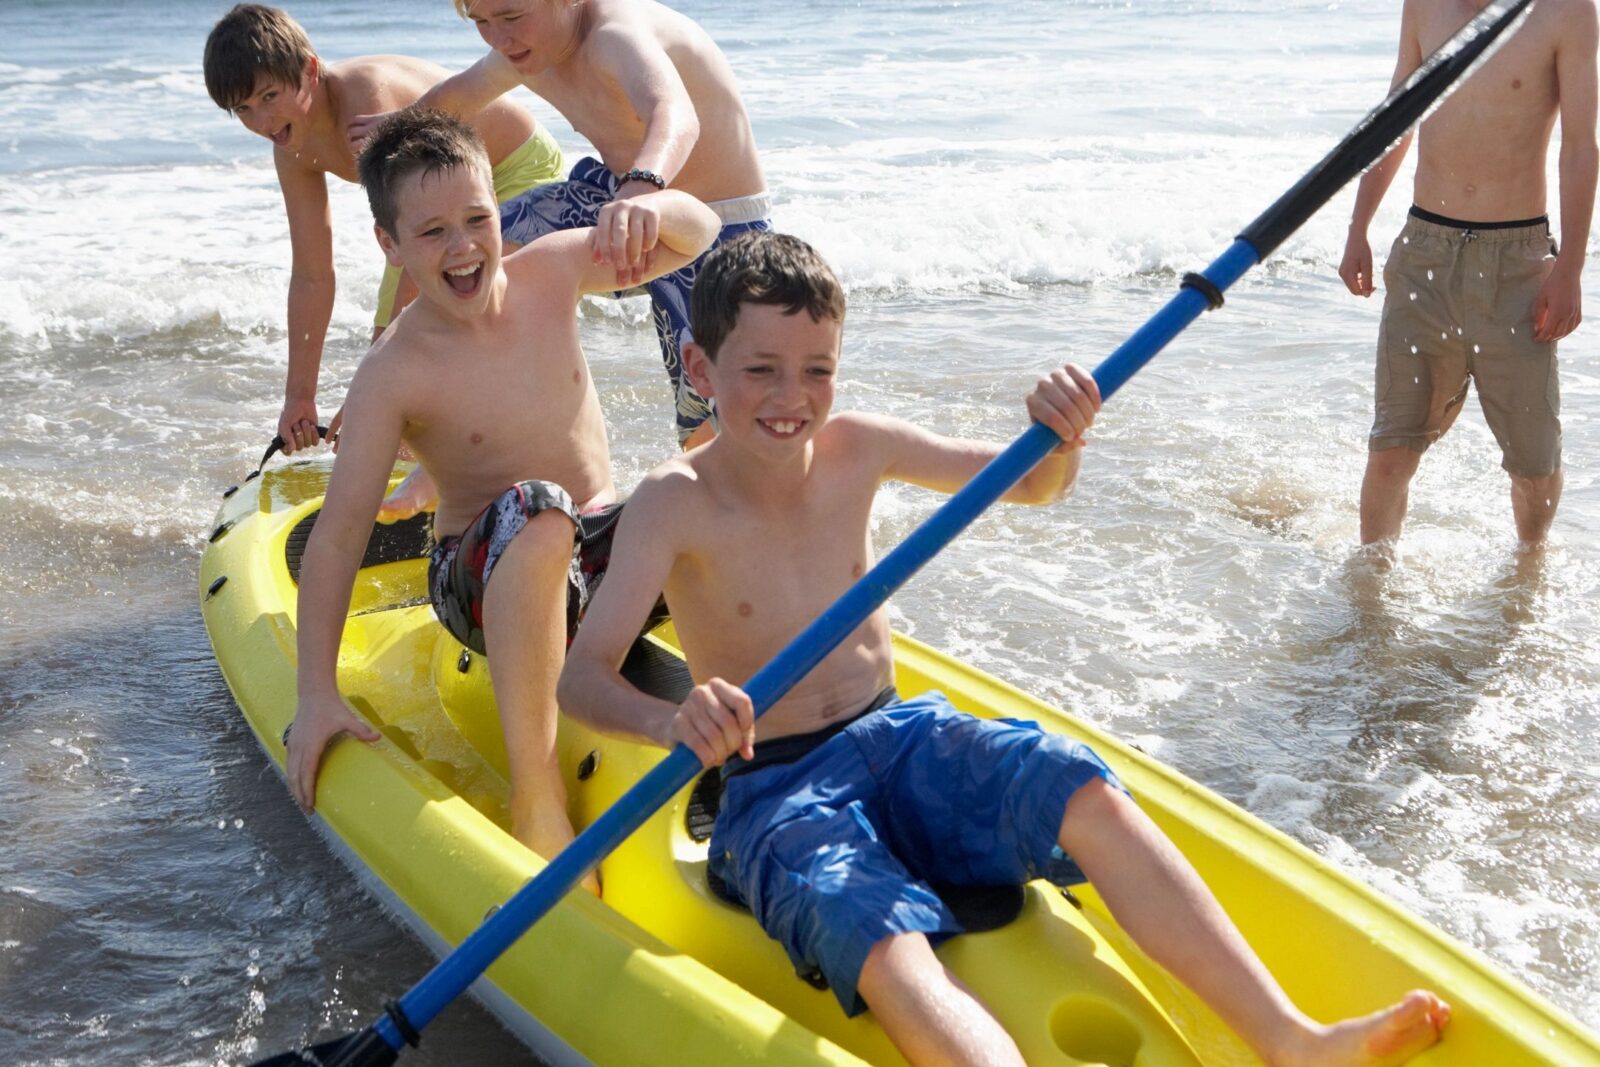 Kids playing on kayak during summer.